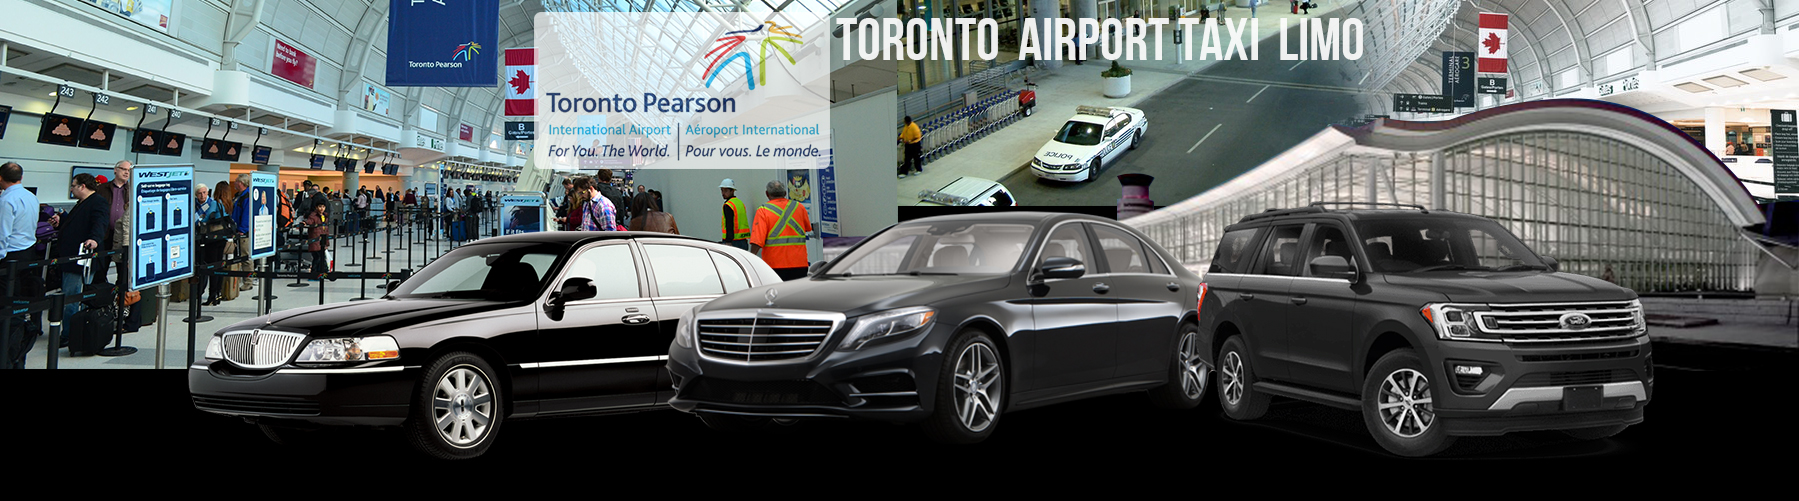 Torontos Airport Taxi